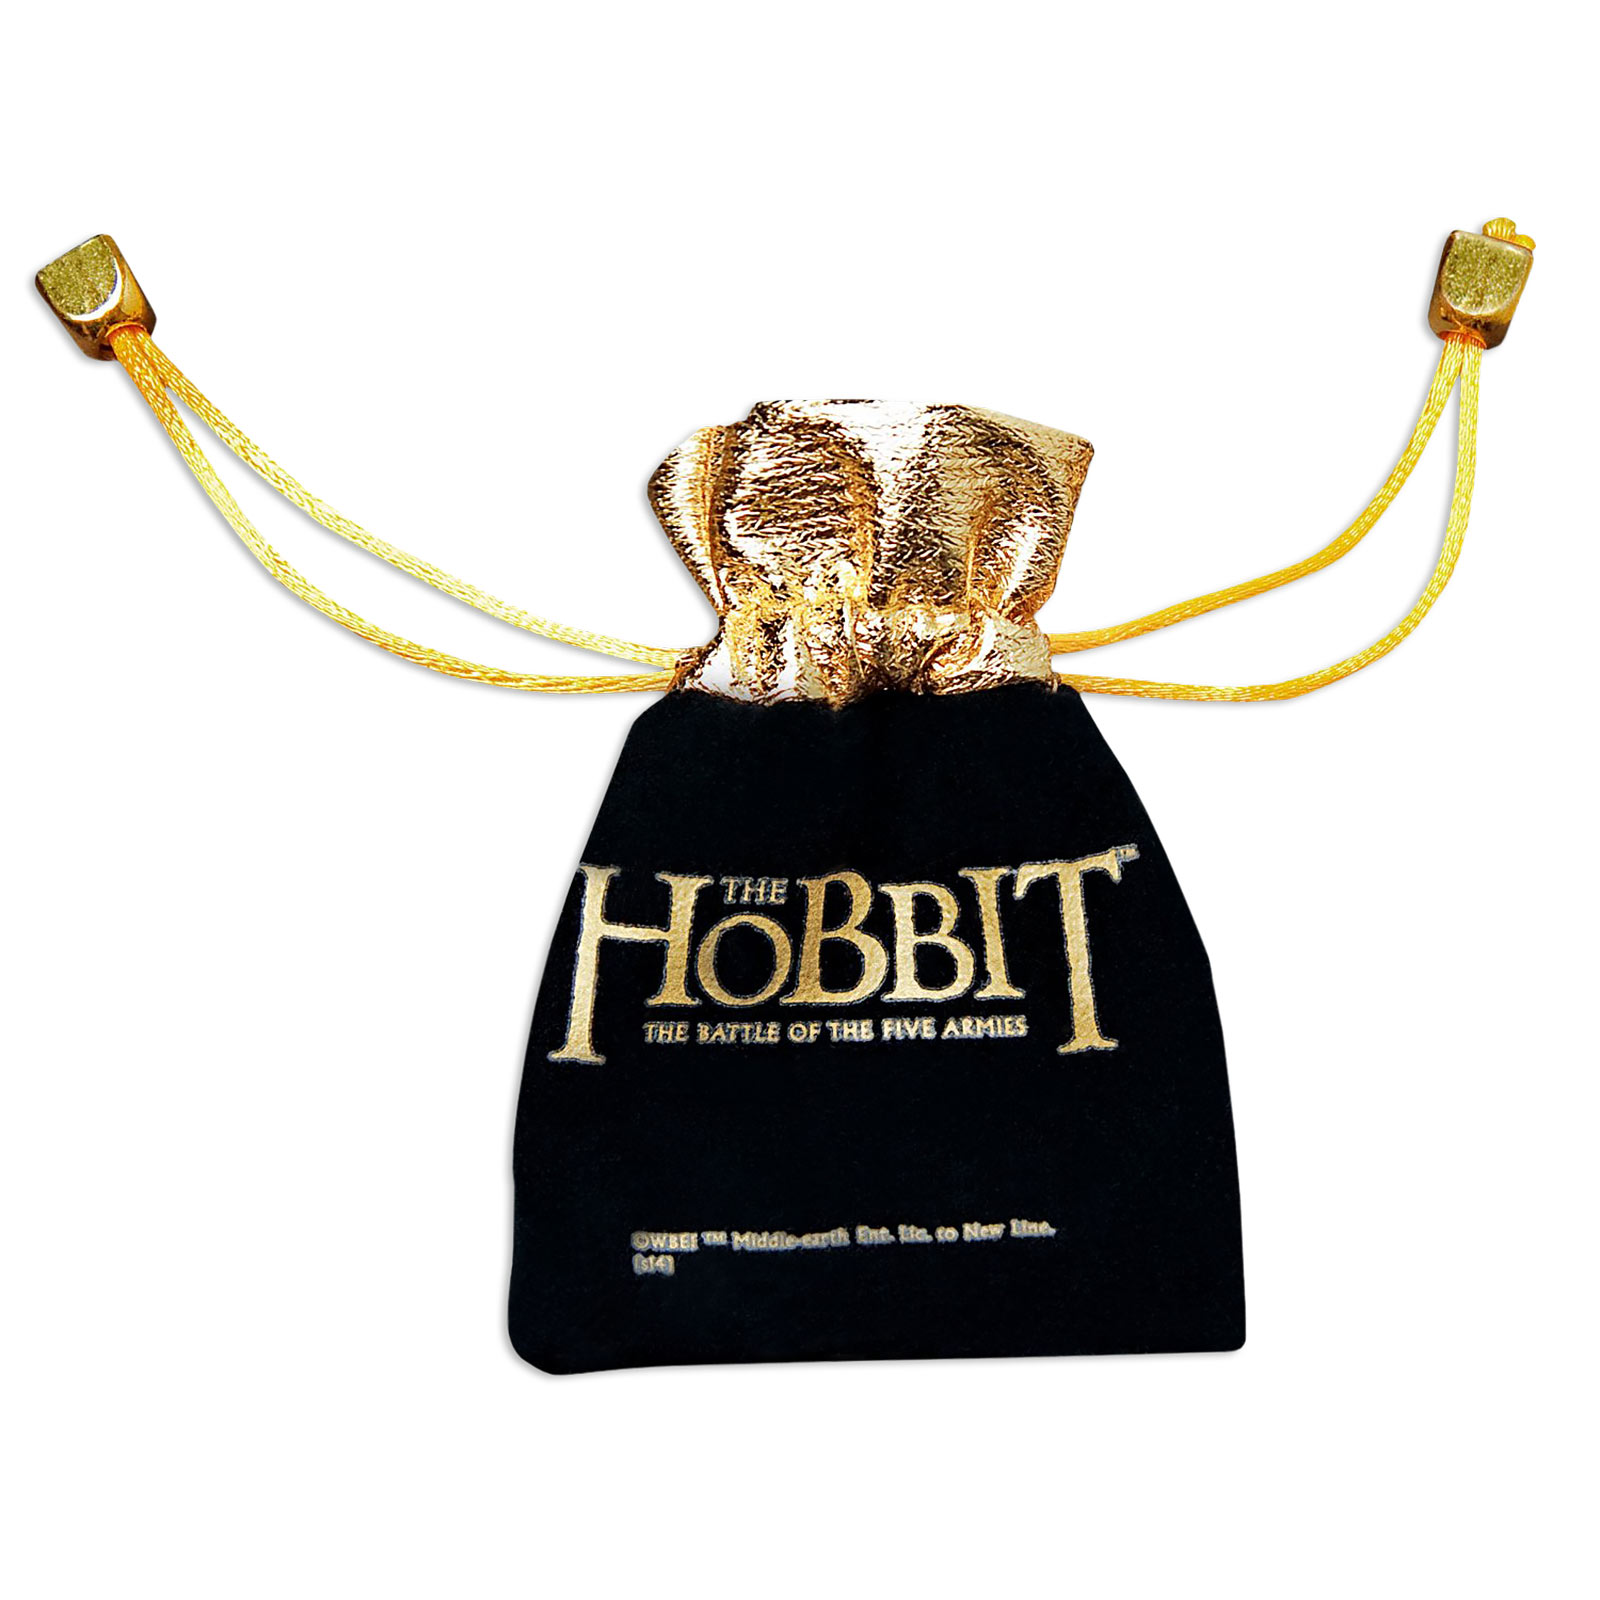 Goldene Hobbit Münze Legolas im Beutel Der Hobbit Schlacht der fünf Heere 